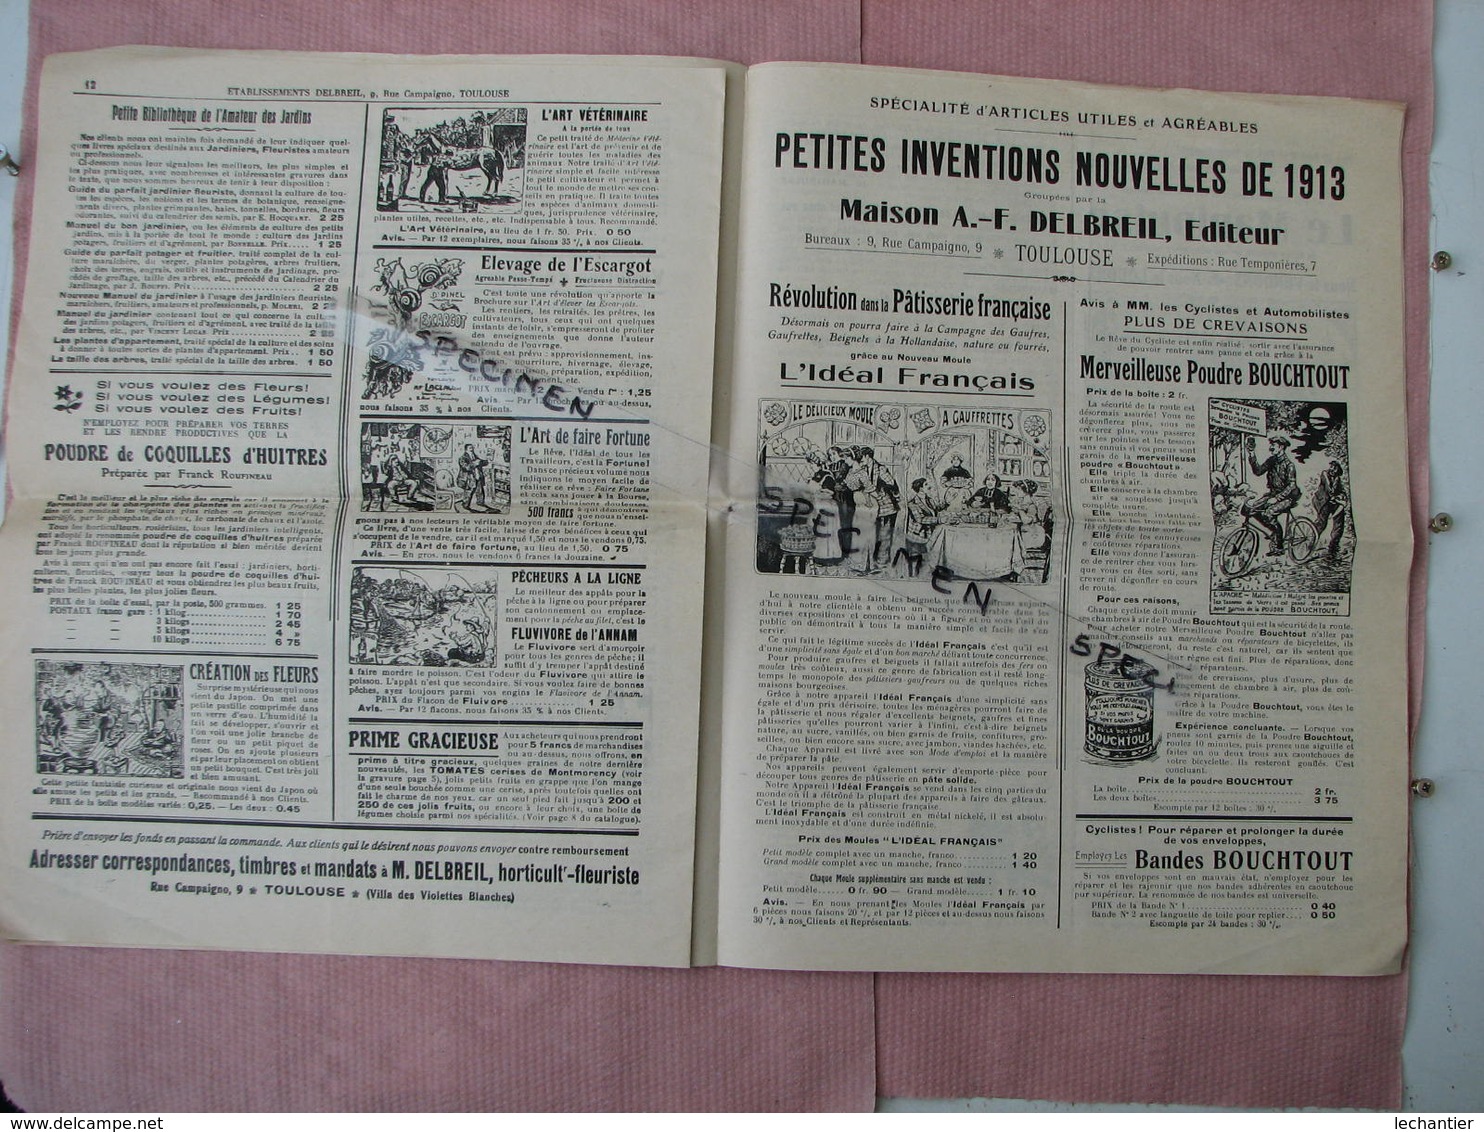 Toulouse curieux catalogue A.F. Delbreil graines et plantes nouvelles et autres pages d'inventions nouvelles 1913/14